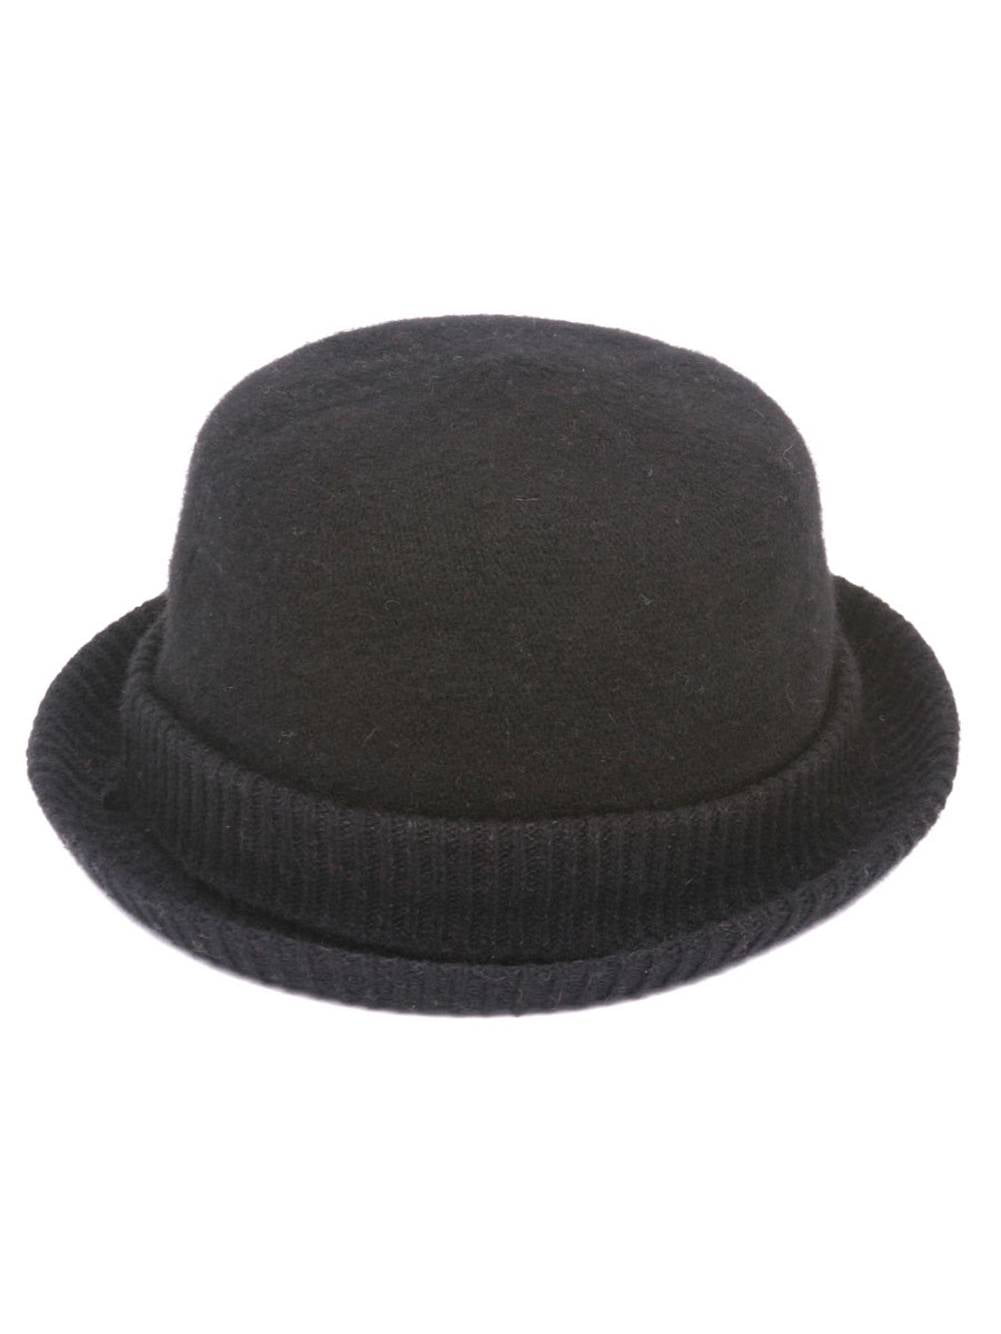 SS/Sophia Womens Cuffed Winter Bowler Hat 